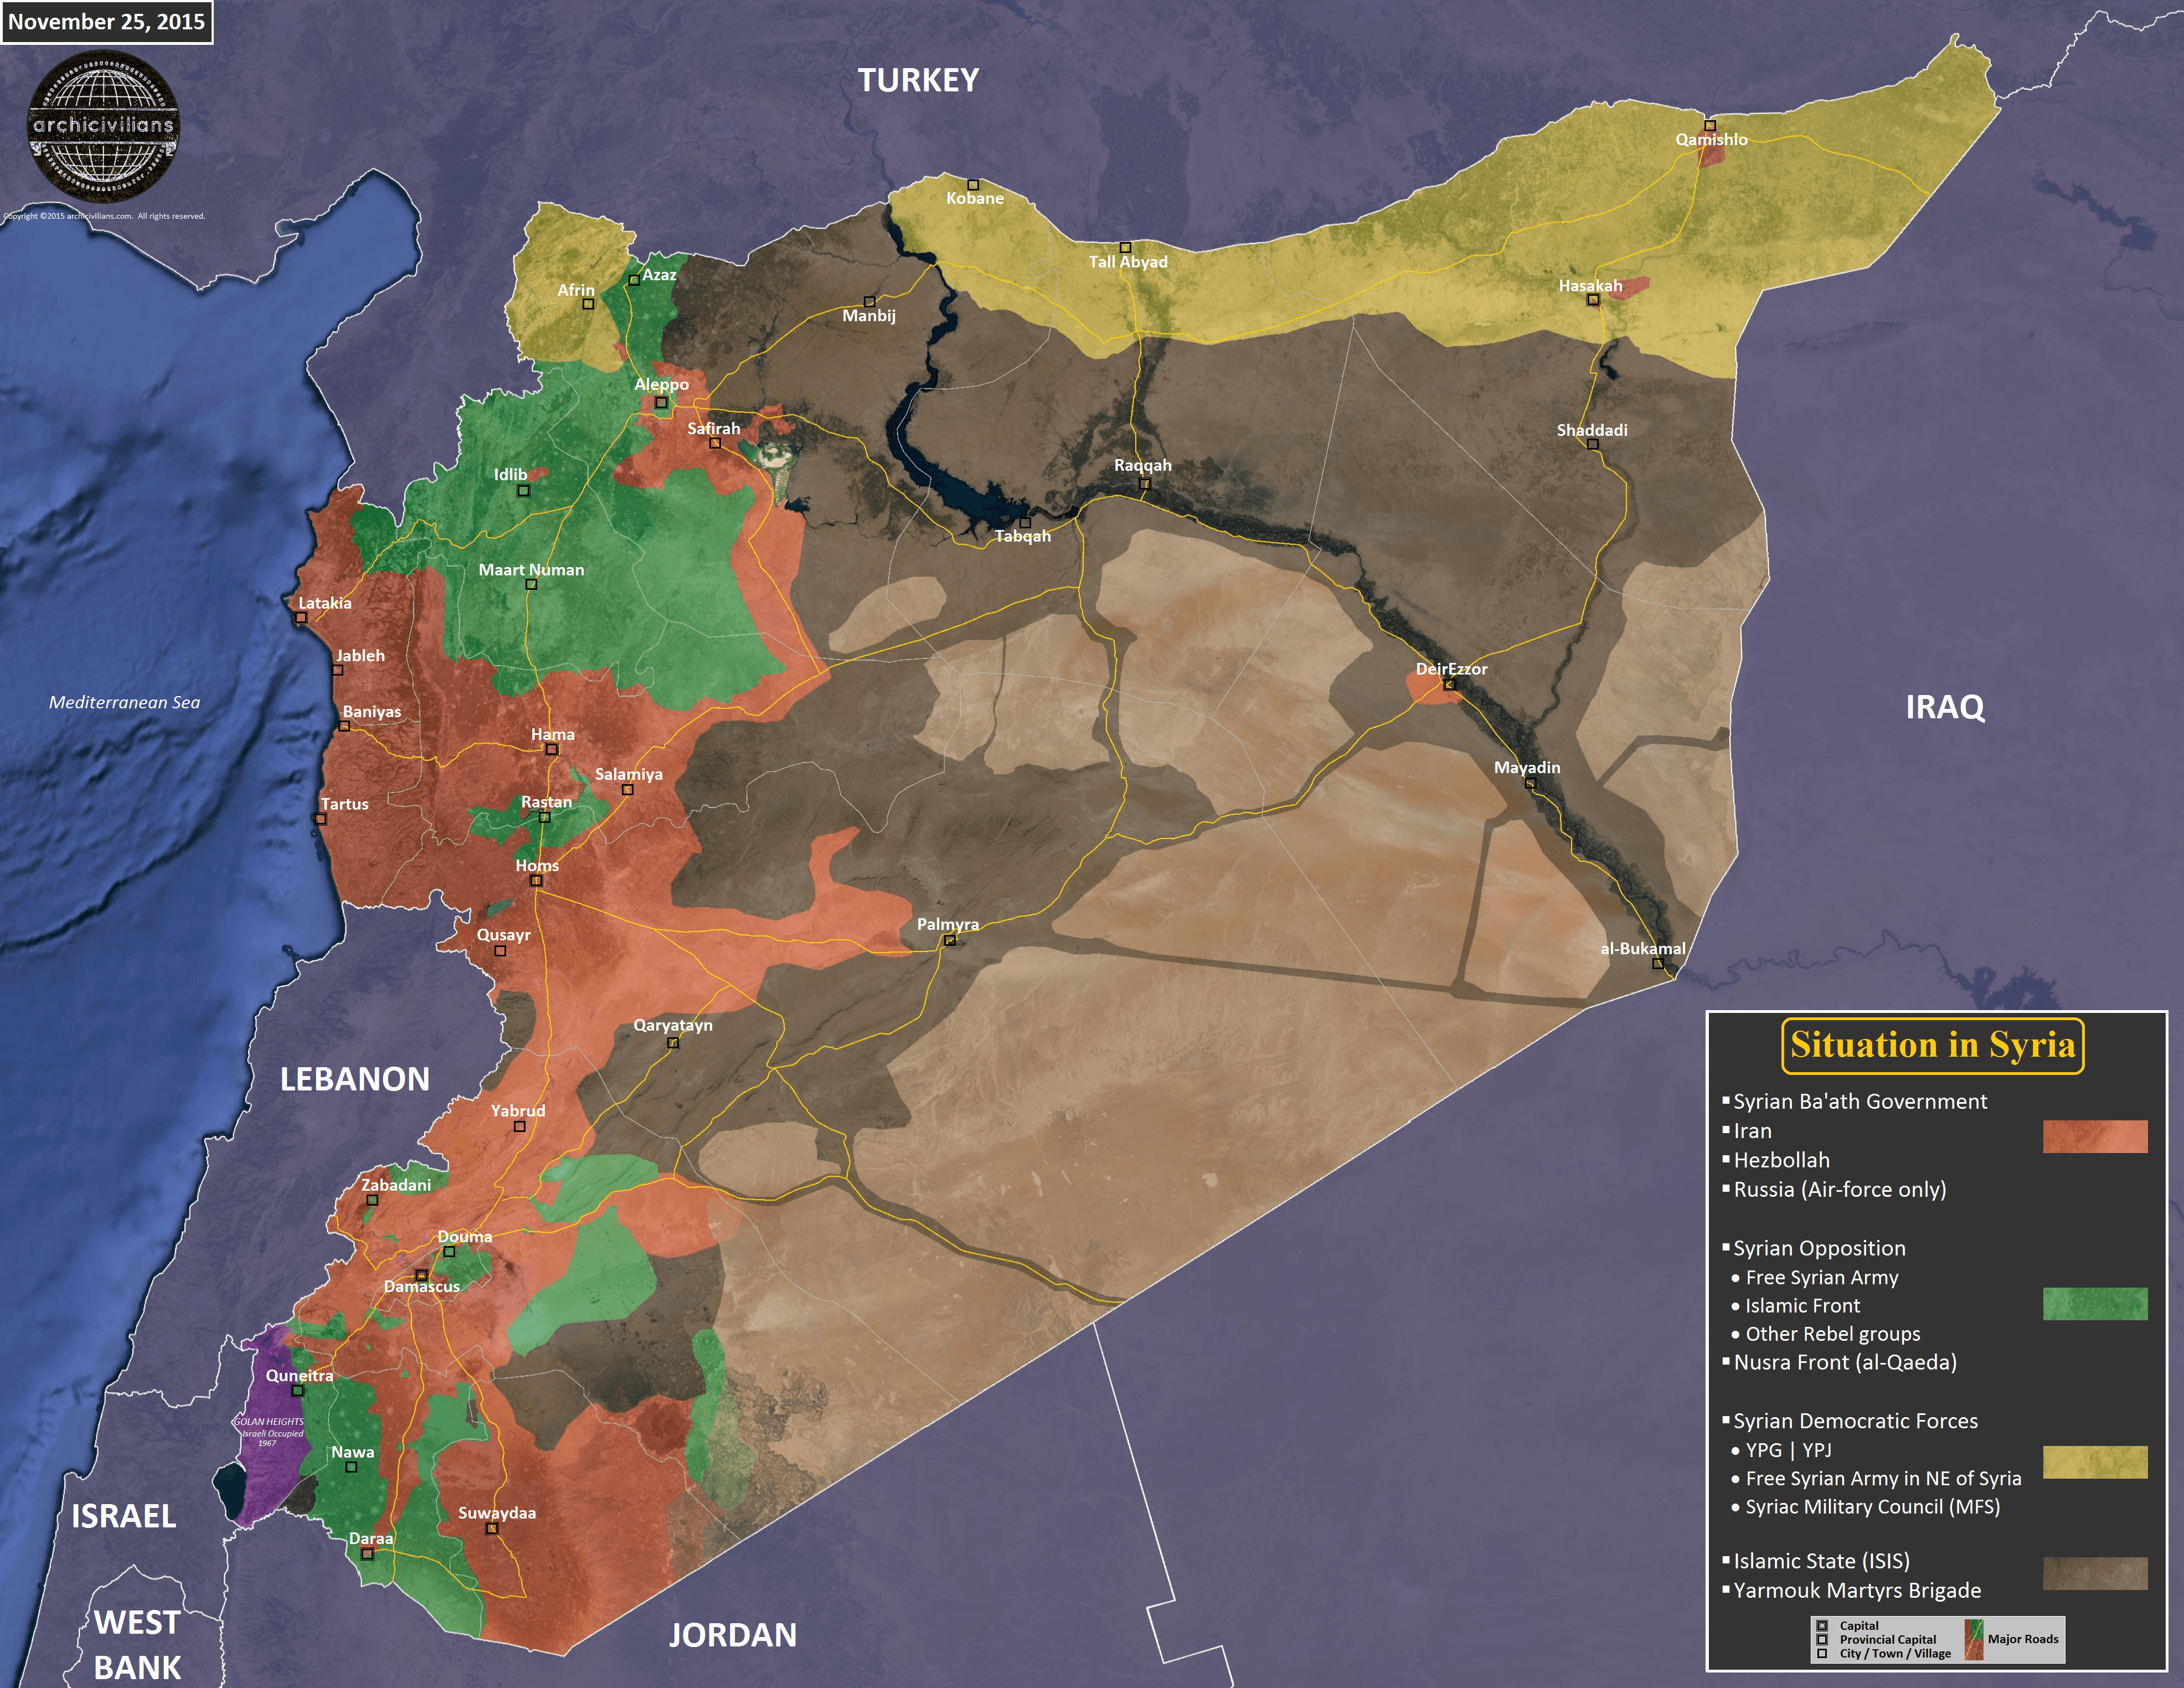 Карта Сирии по состоянию на 25 ноября 2015 года, расположение сторон конфликта (ИГИЛ, Асад, сирийская оппозиция, курды)